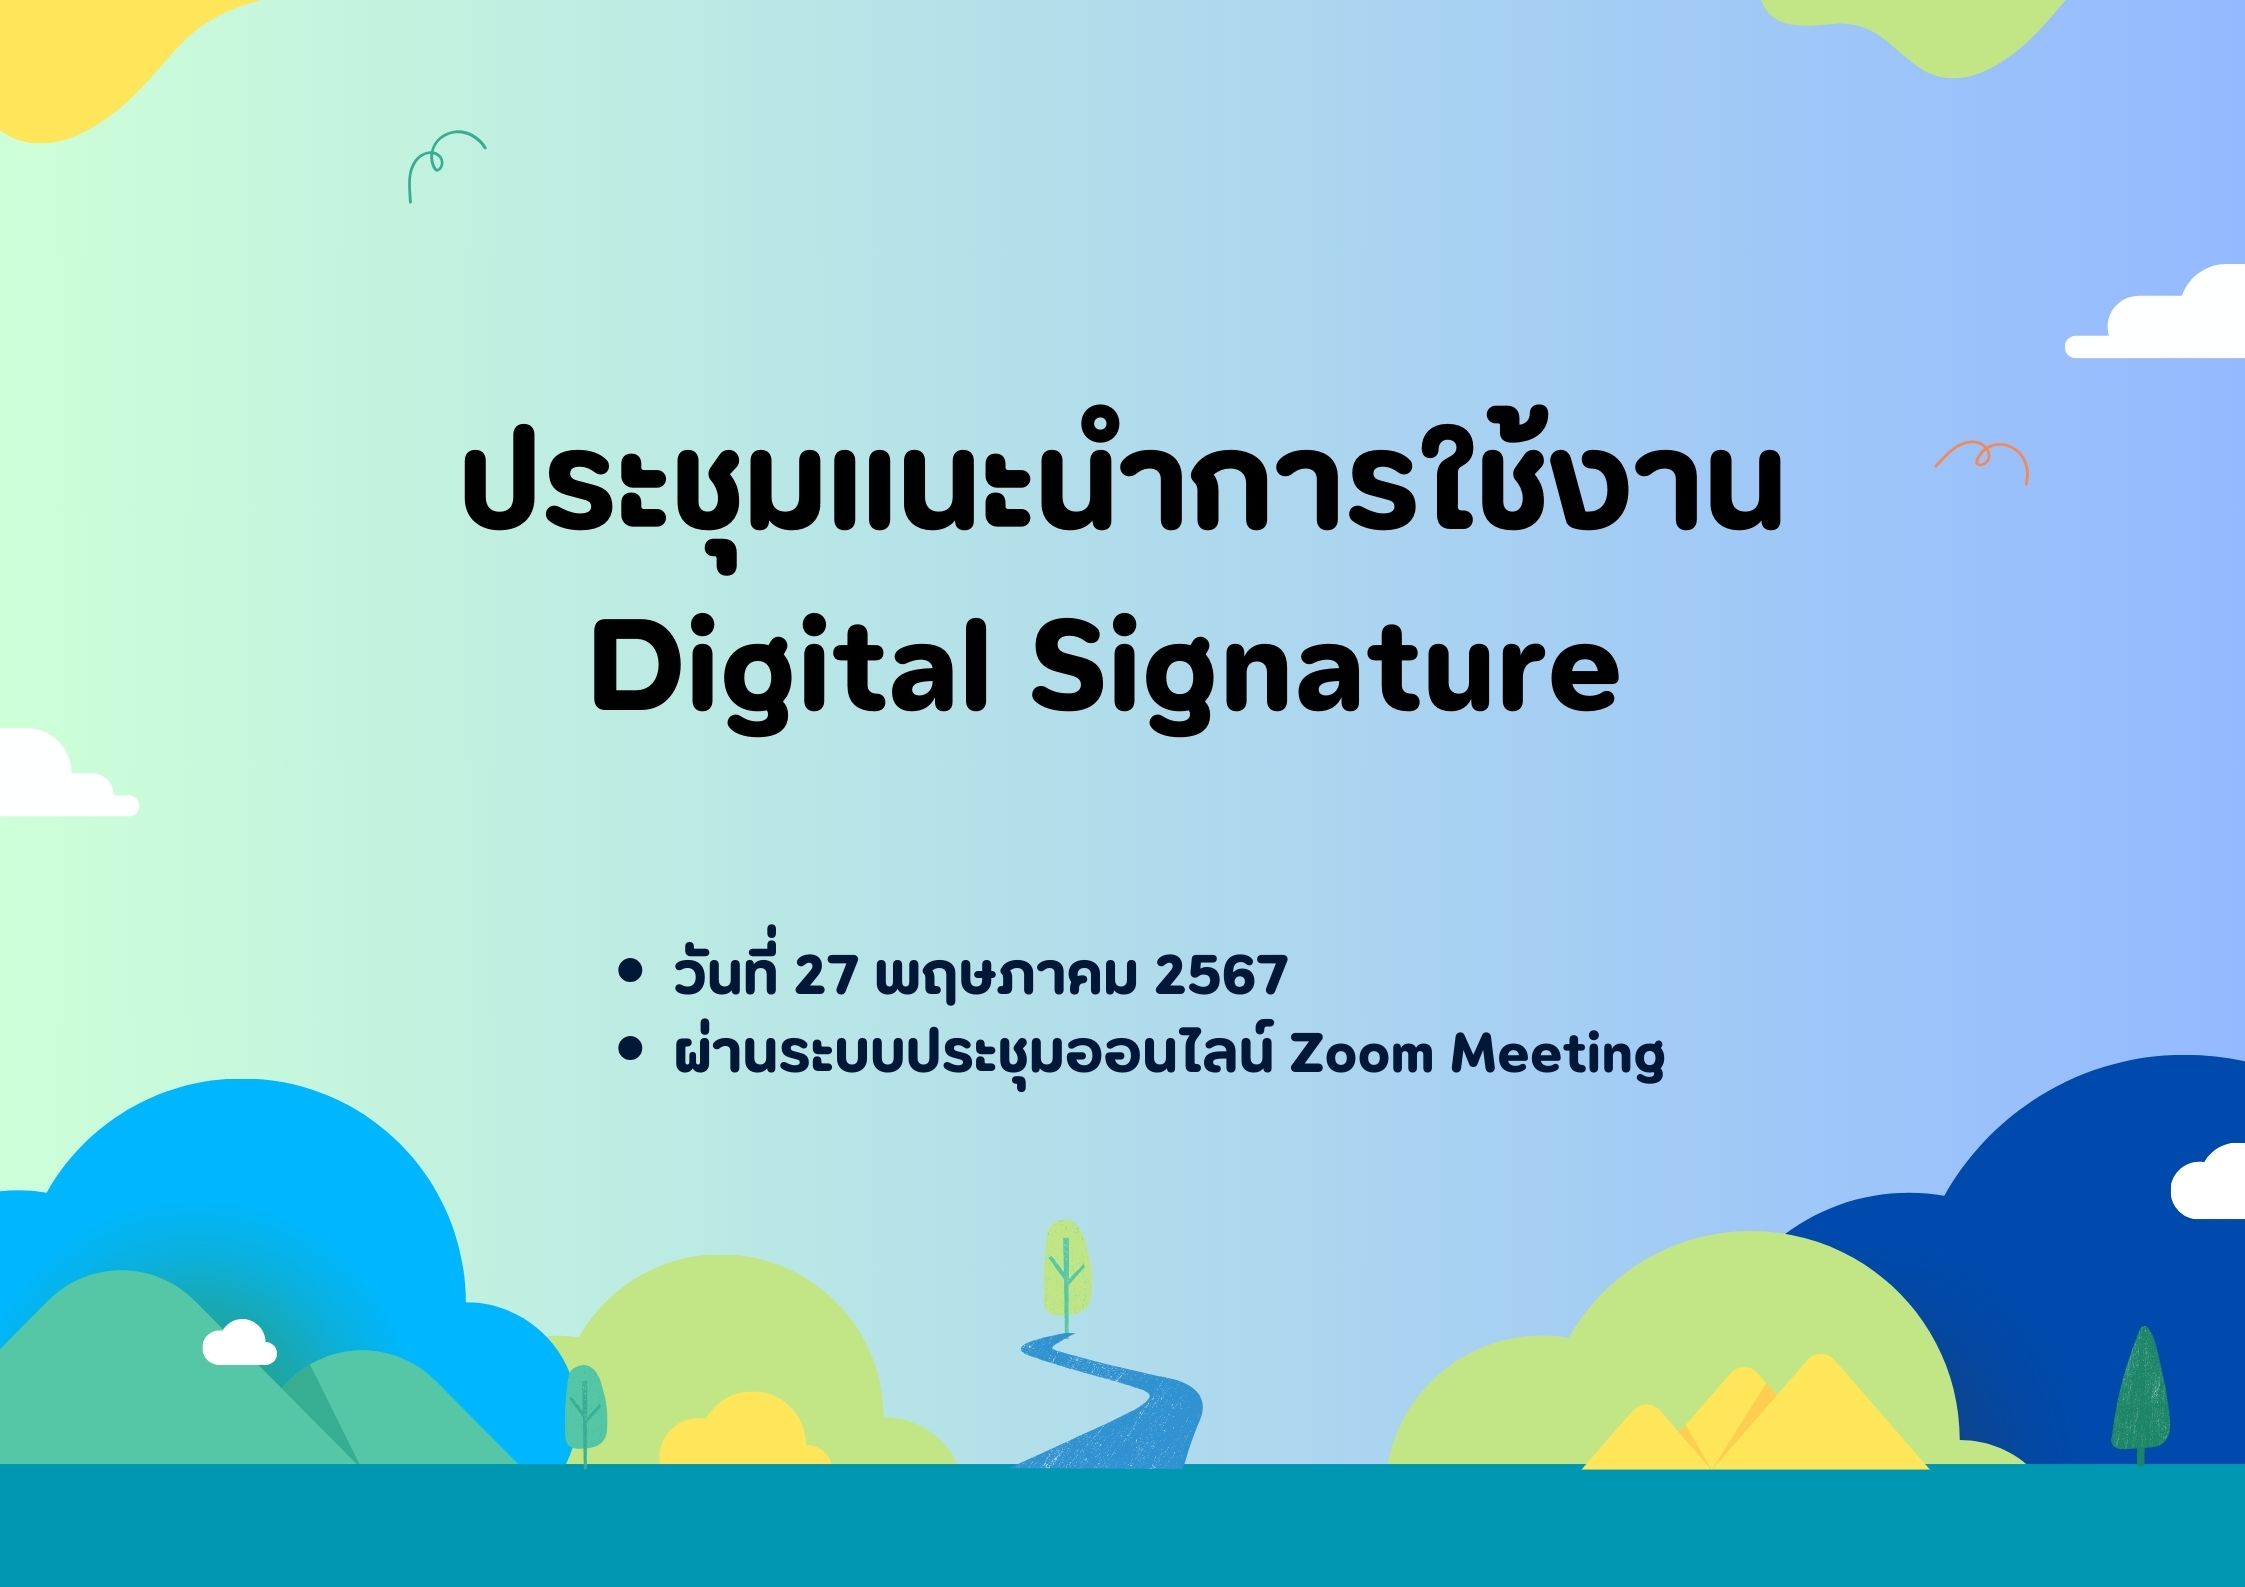 แนะนำการใช้งาน Digital Signature